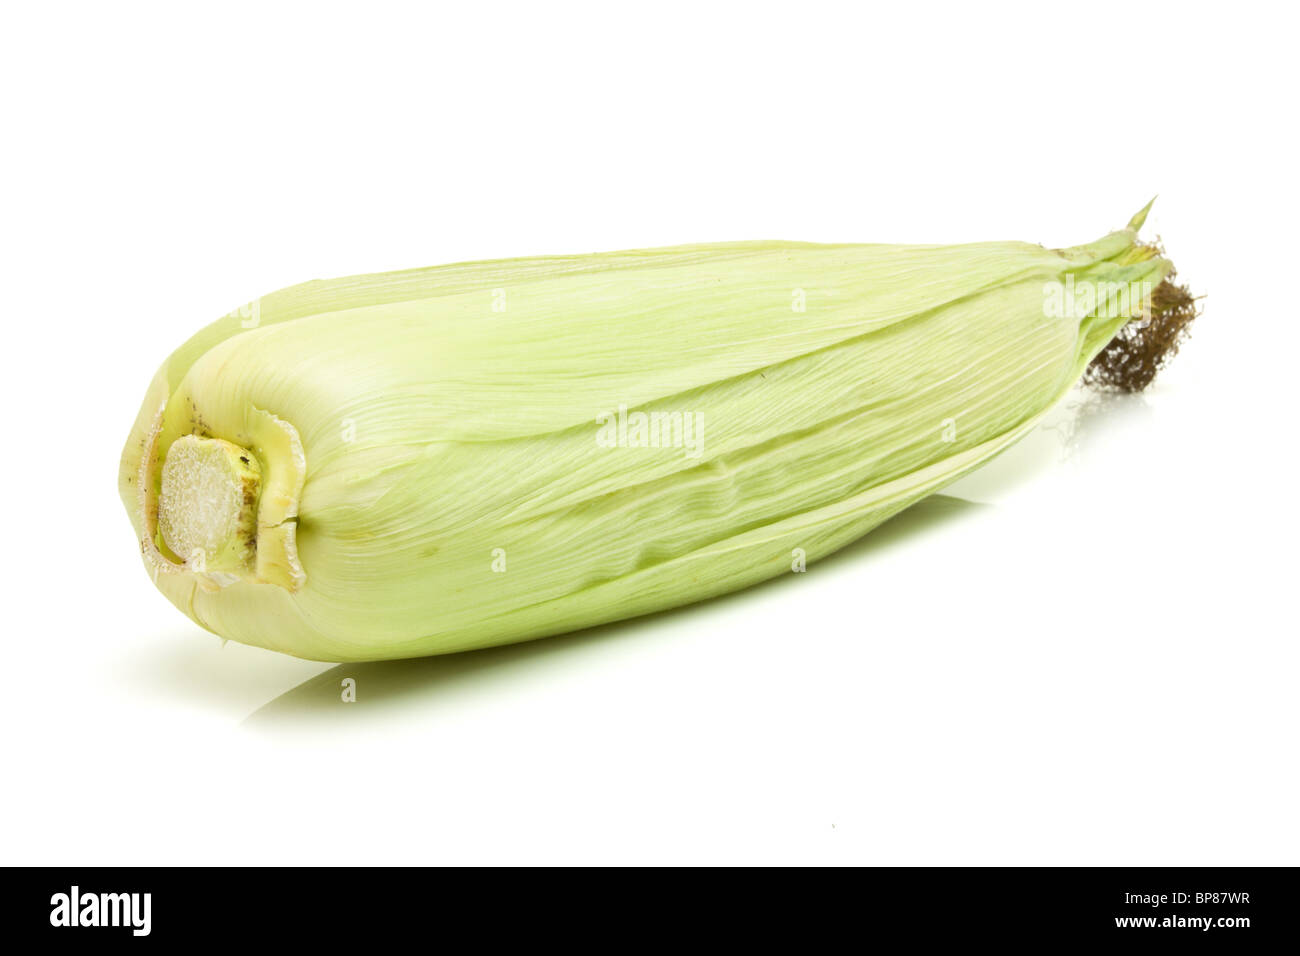 Sulla pannocchia di mais sansa dalla prospettiva bassa isolata contro uno sfondo bianco. Foto Stock